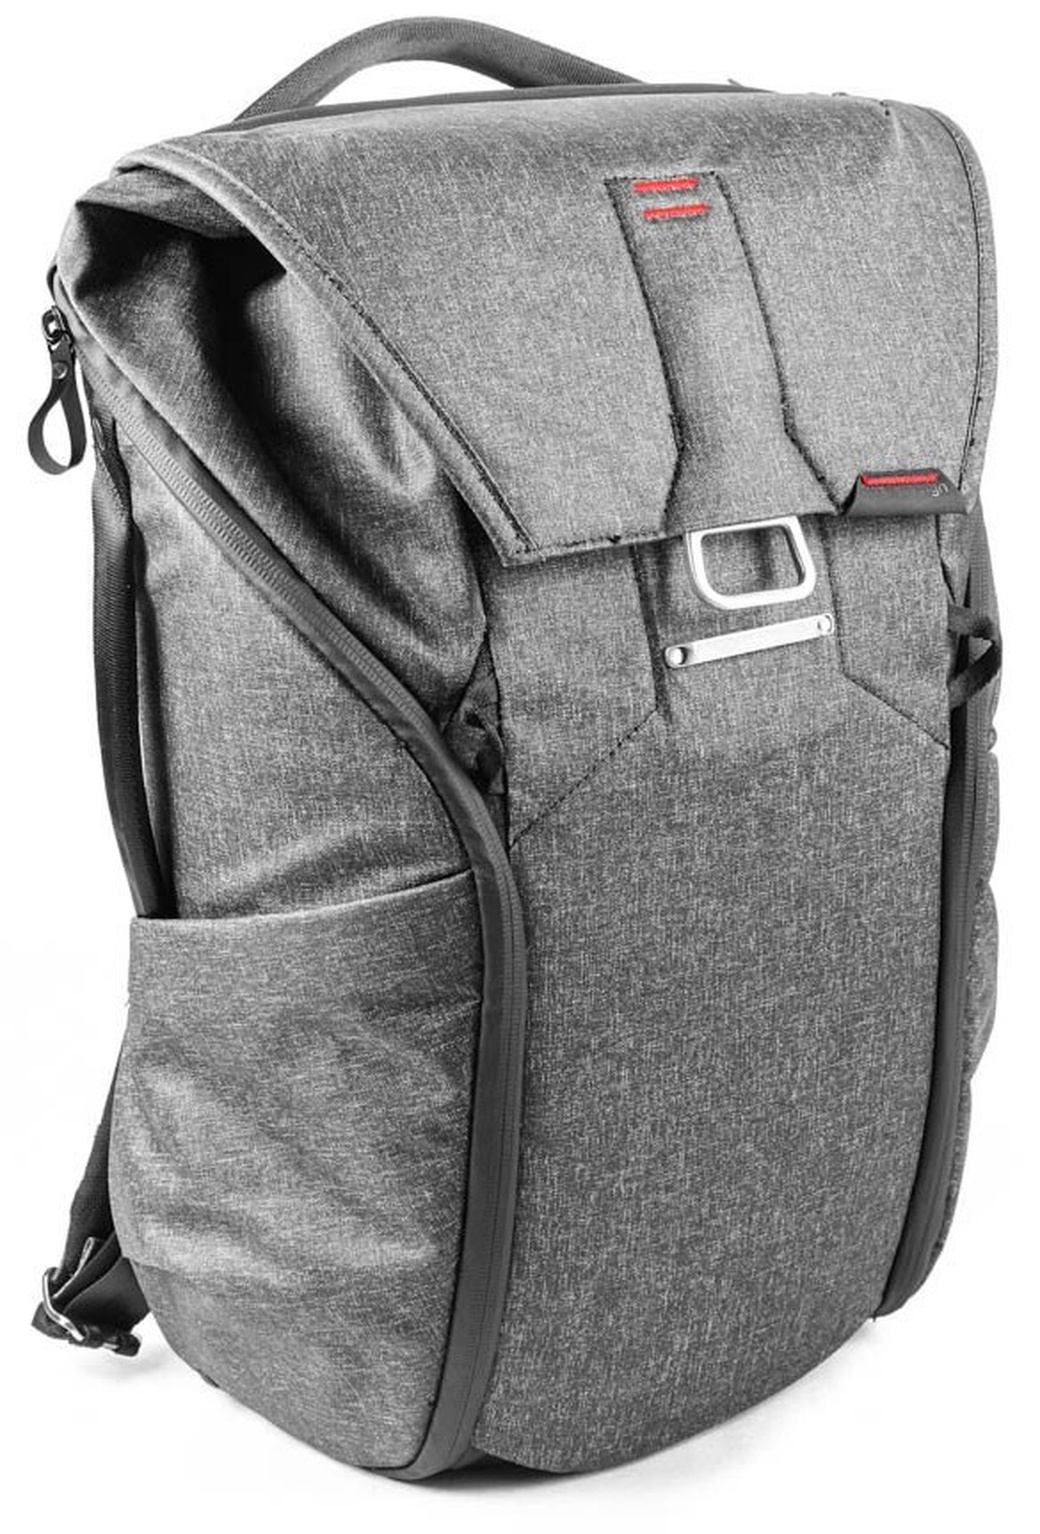 Рюкзак Peak Design Everyday Backpack 20L Charcoal, темно-серый фото